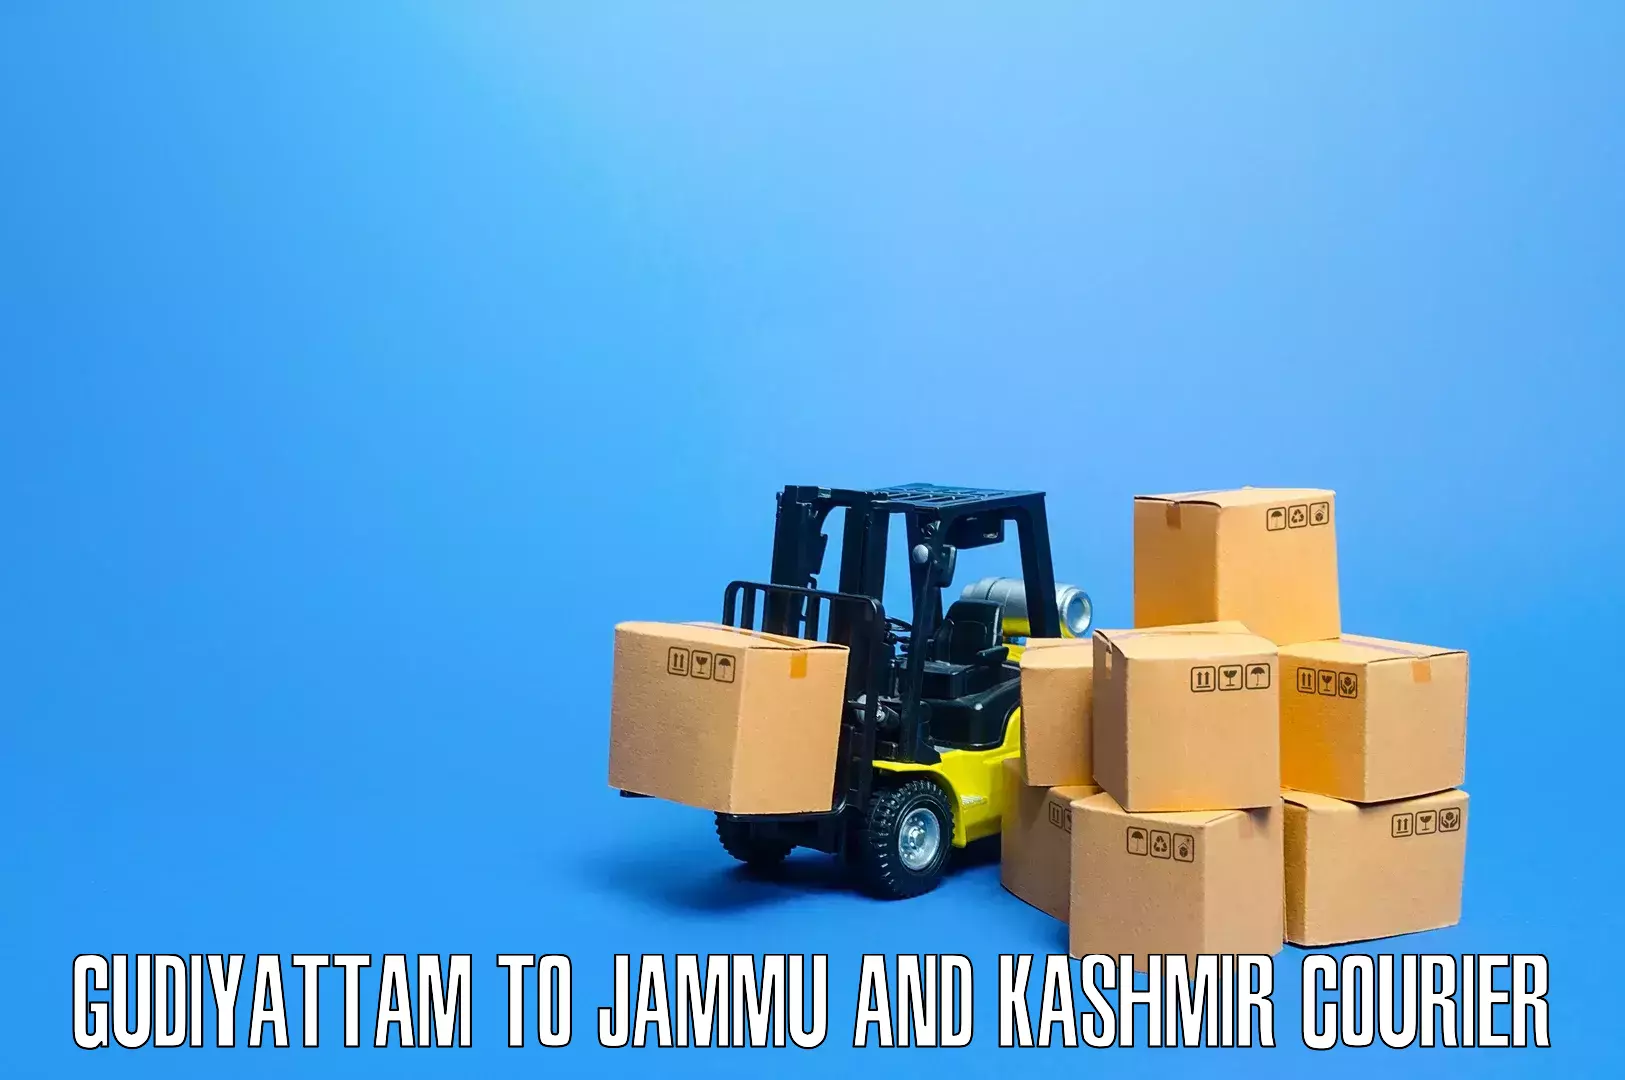 Furniture delivery service Gudiyattam to Kargil